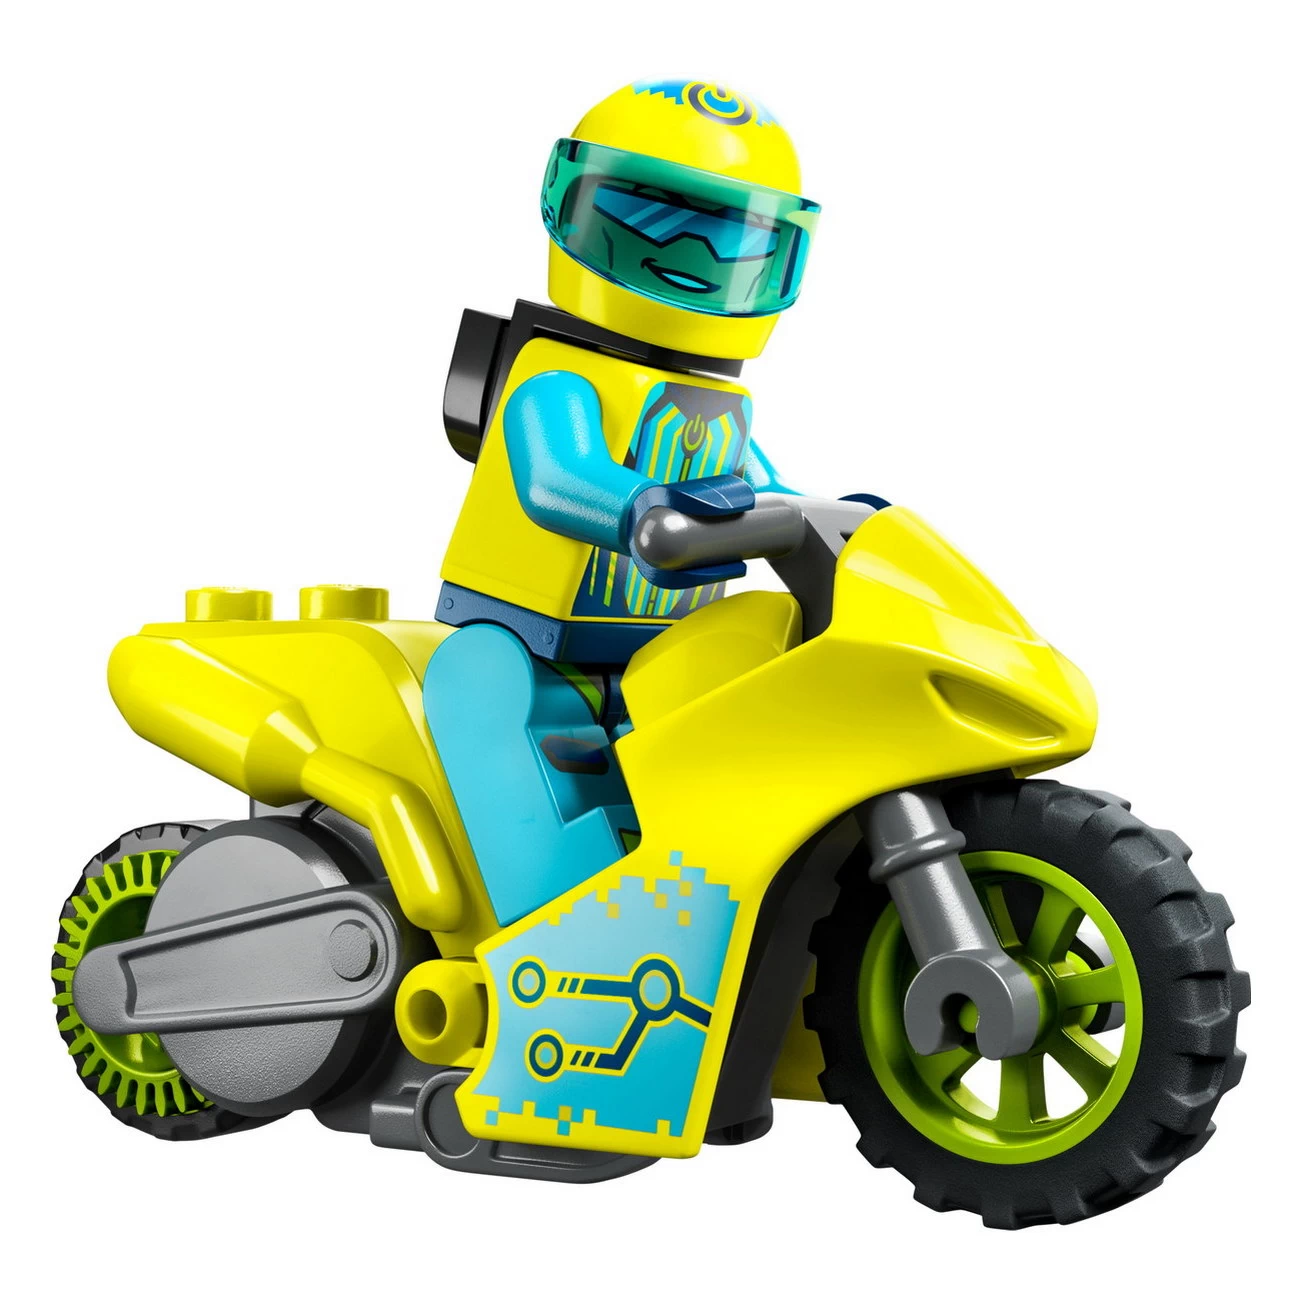 Cyber-Stuntbike (60358)